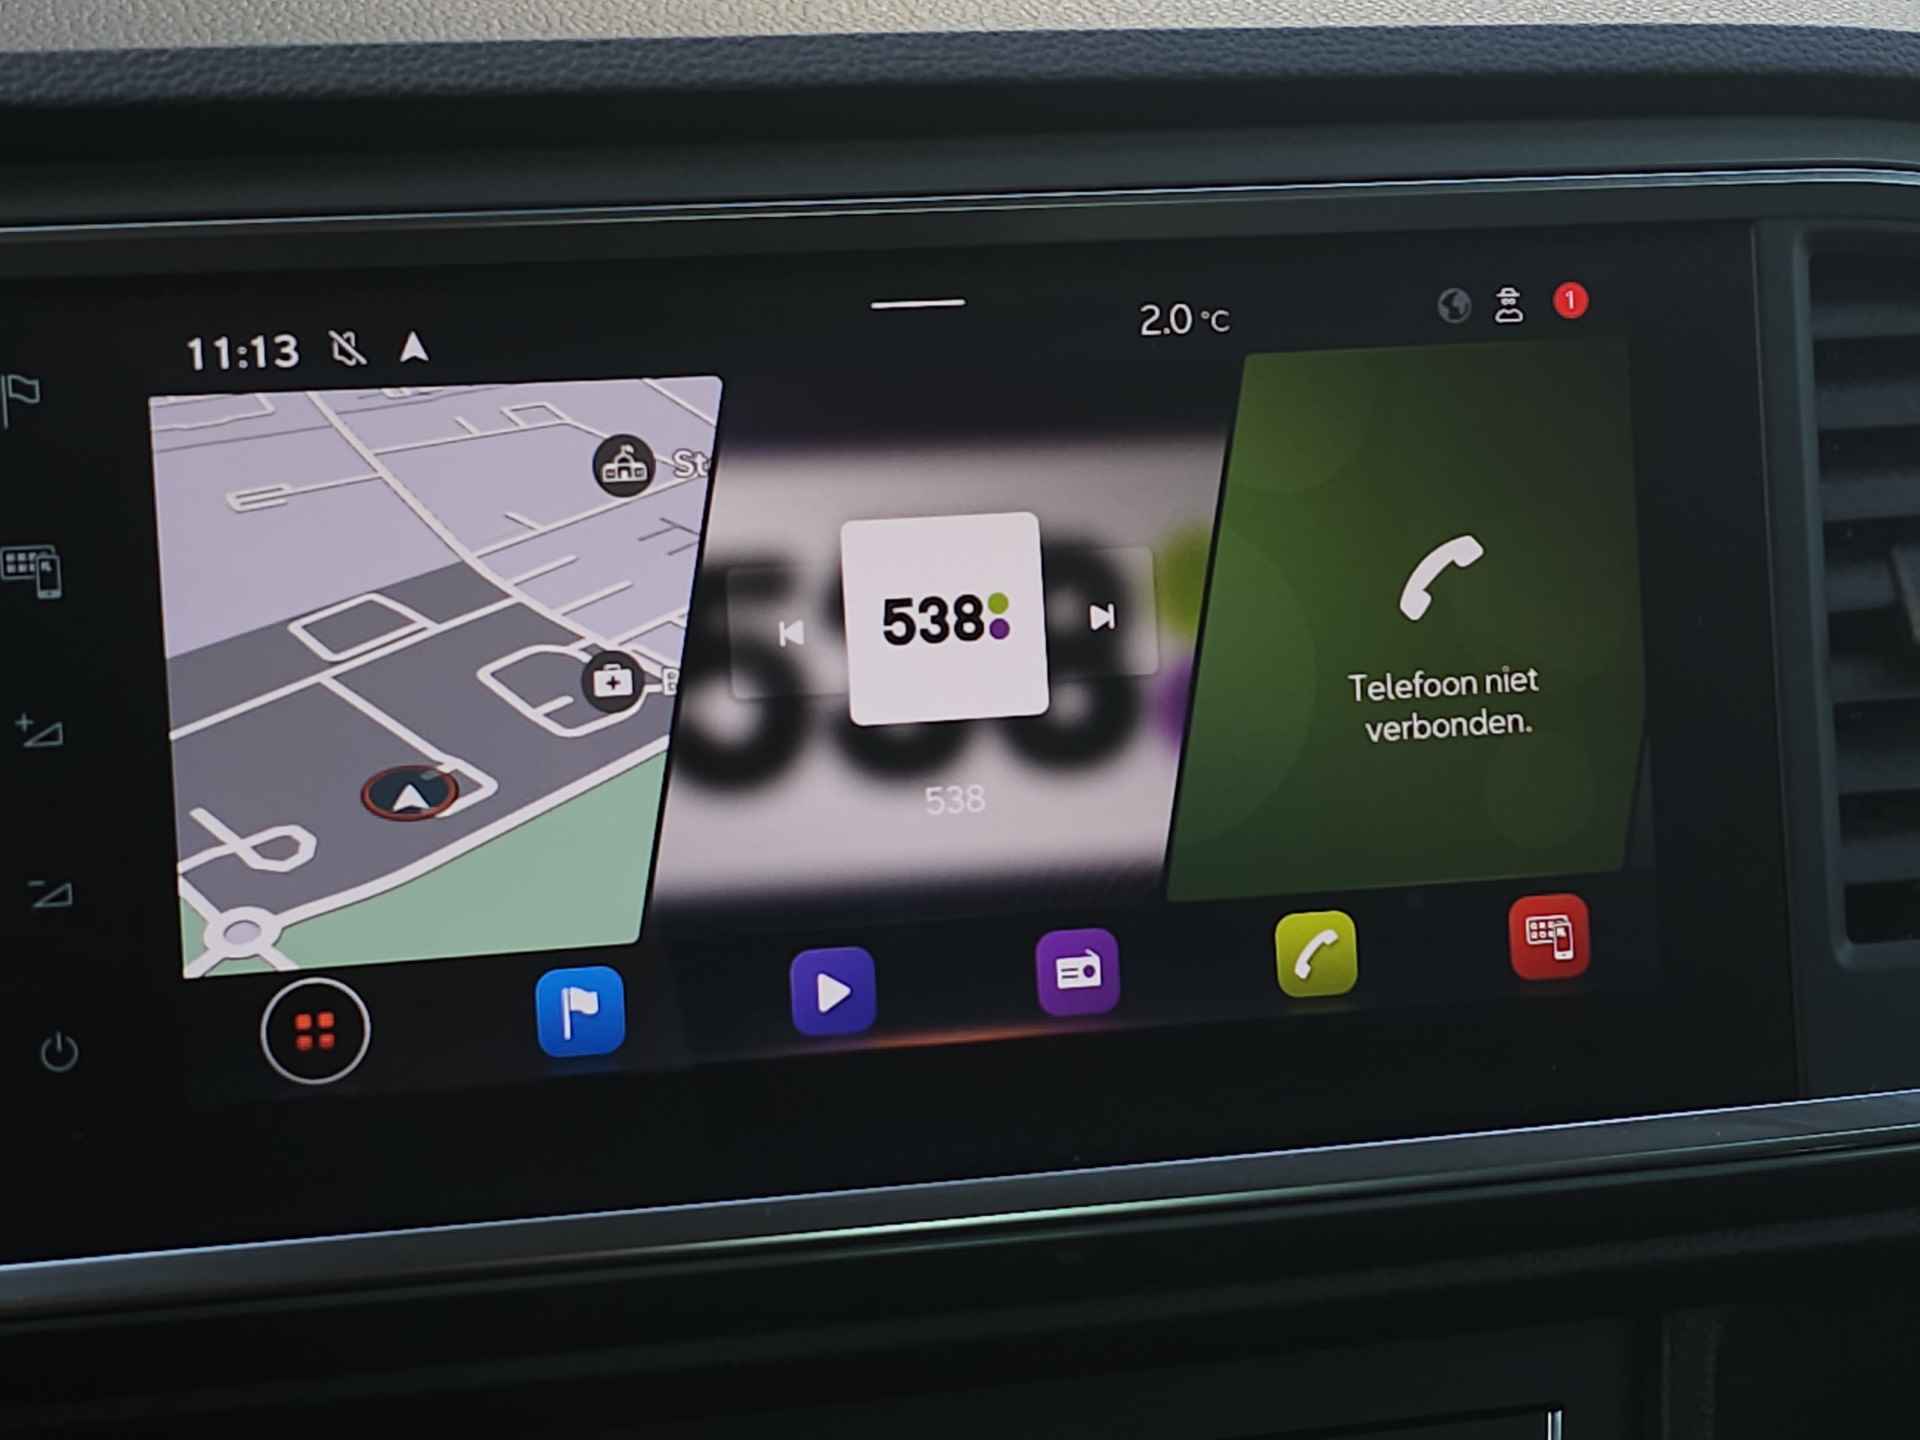 SEAT Ateca 1.0 TSI 110 pk Style Business Intense | Navigatie | LED | Lm velgen | Camera | Sensoren | All Season banden | incl. Bovag rijklaarpakket met 12 maanden garantie | - 25/35